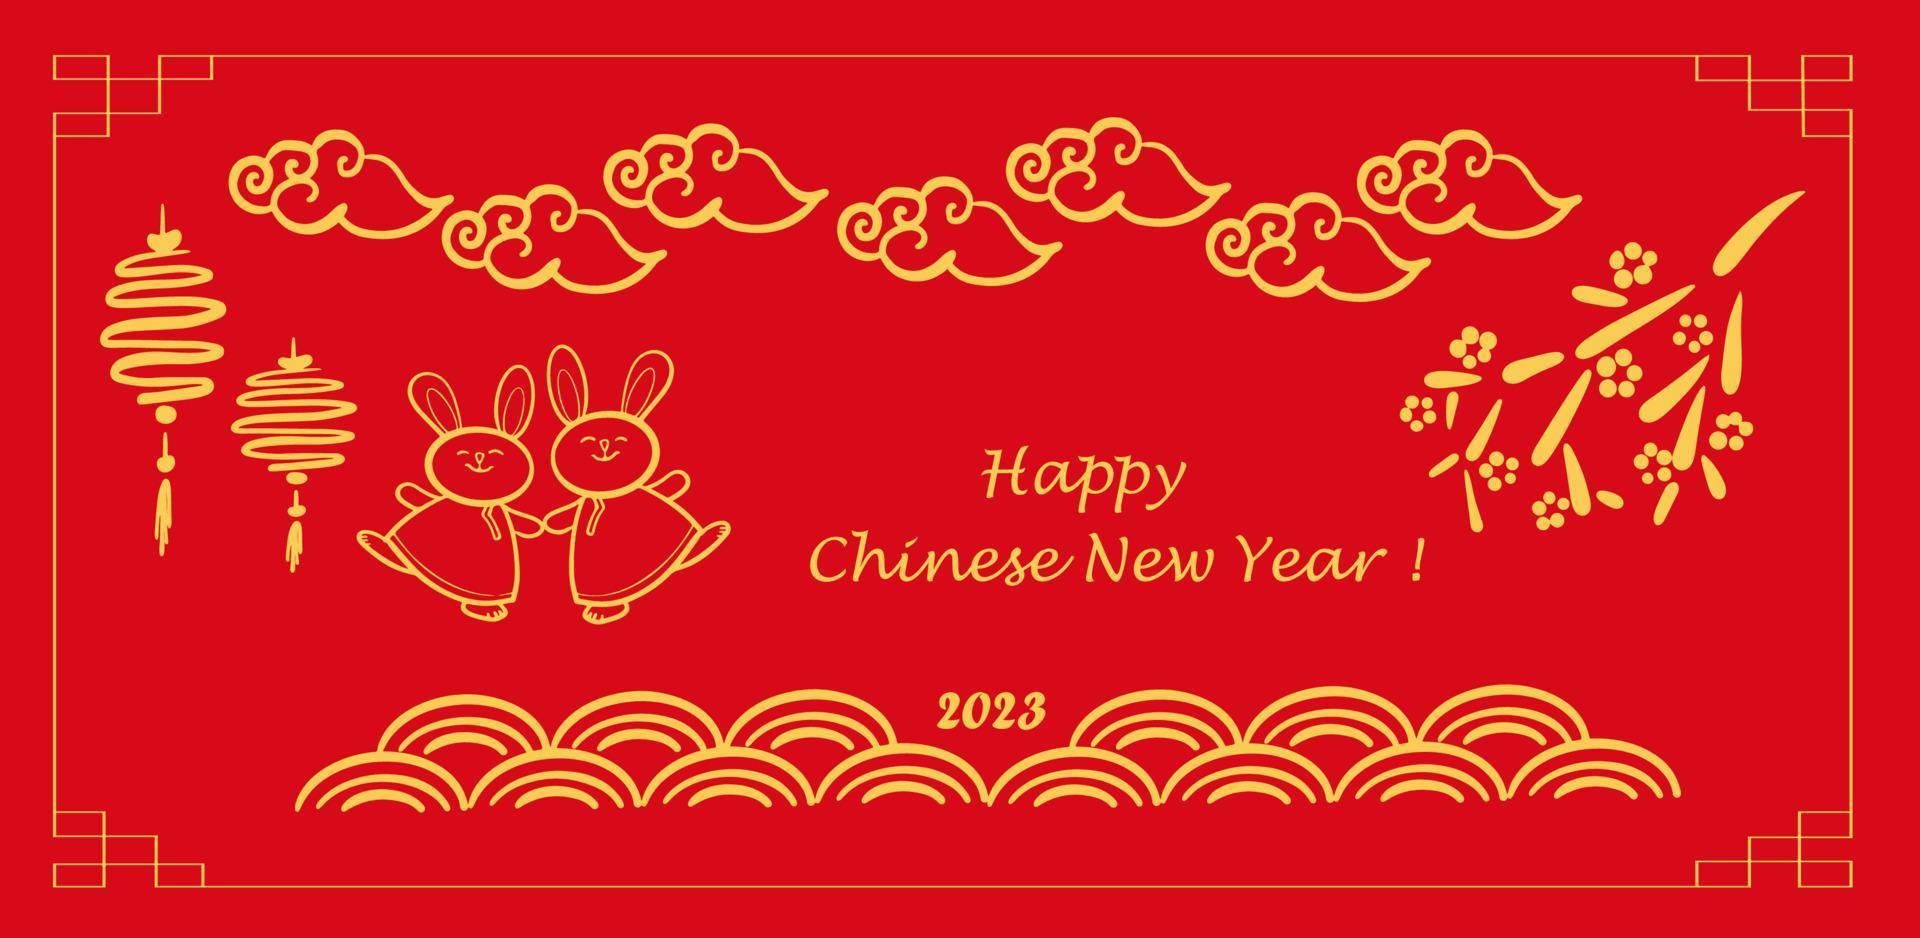 año nuevo chino 2023, el año del conejo, personajes de arte de línea roja y dorada, elementos asiáticos simples dibujados a mano. vector